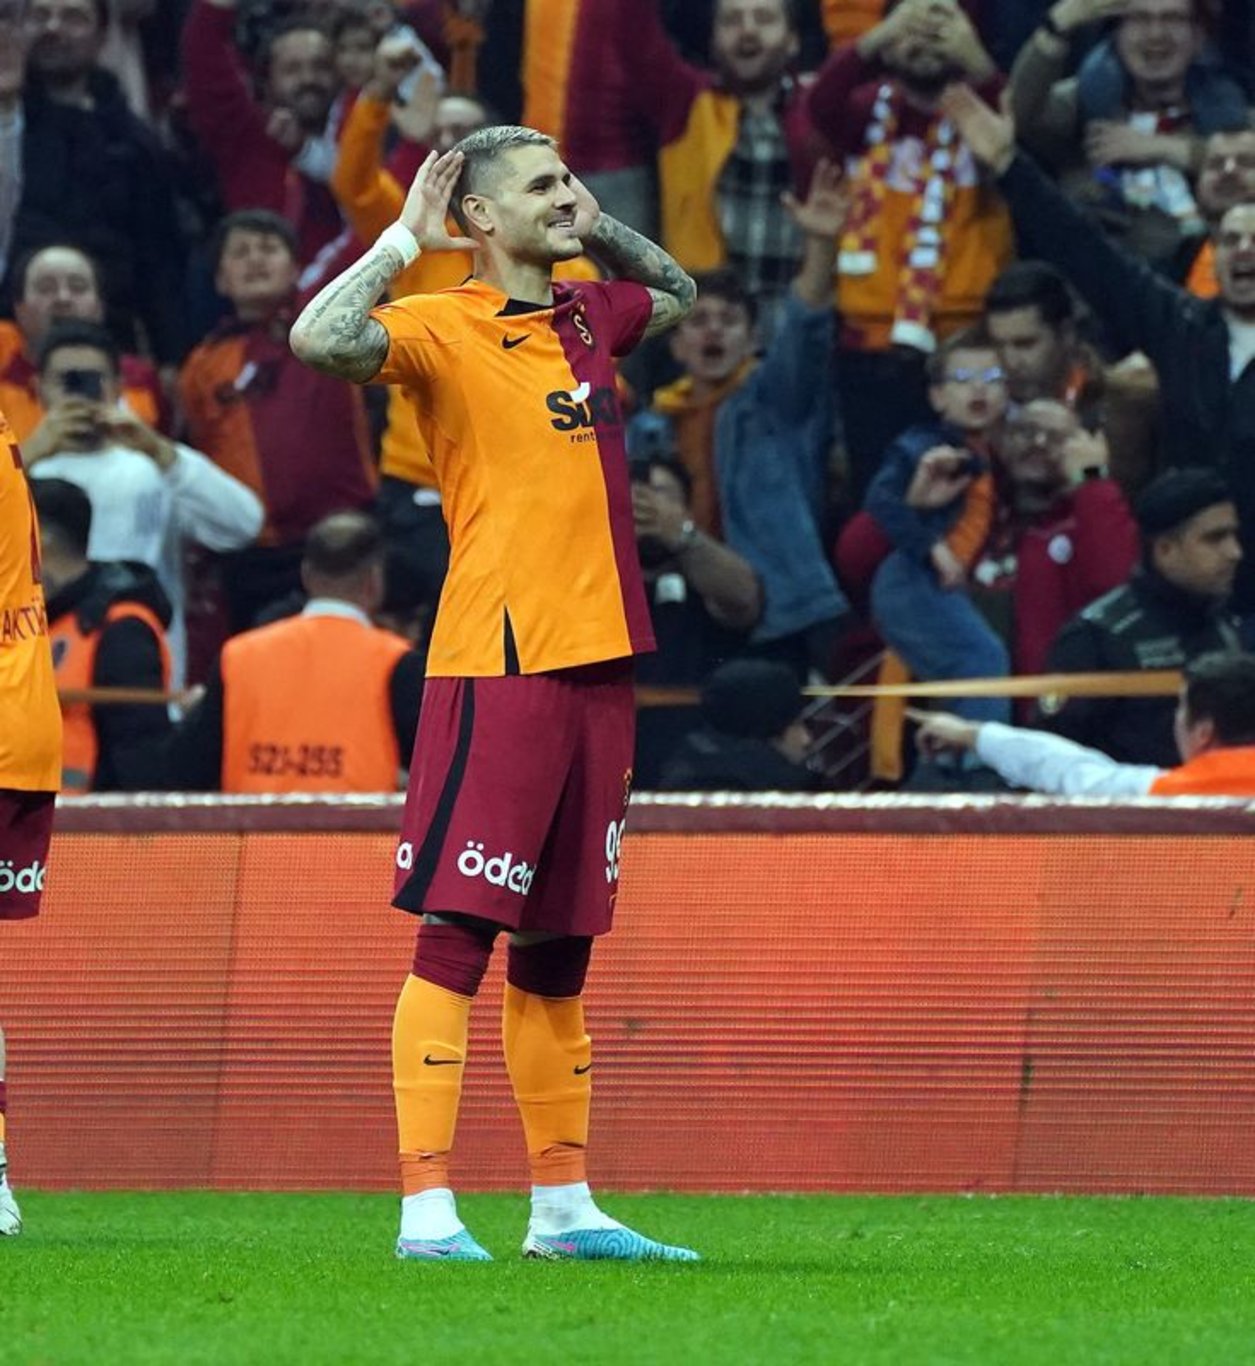 Galatasaray nasıl şampiyon olur, kaç puan gerekiyor? Galatasaray'ın şampiyonluk ihtimalleri neler?